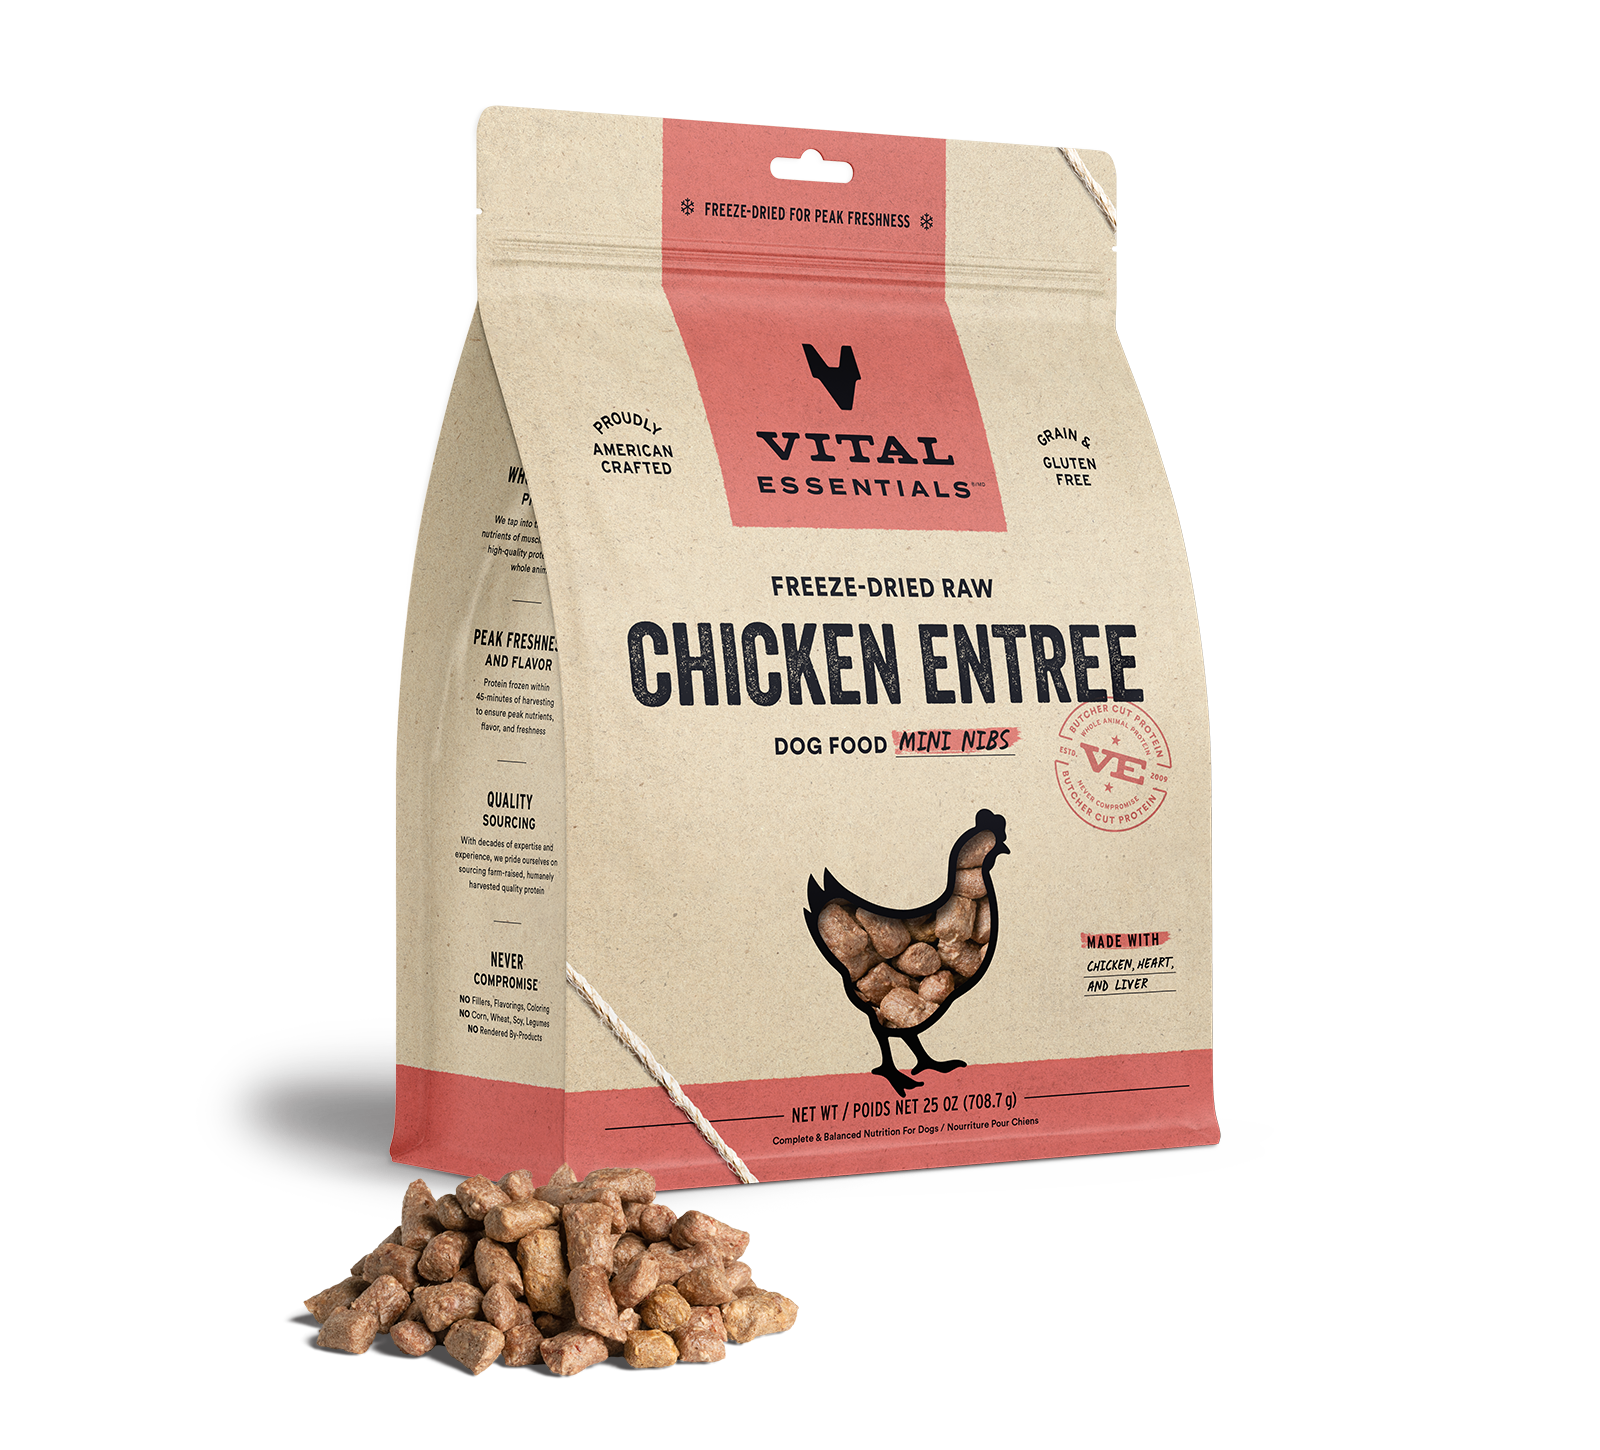 Vital Essentials Freeze-Dried Raw Chicken Entree Dog Food Mini Nibs, 25 oz - Treats